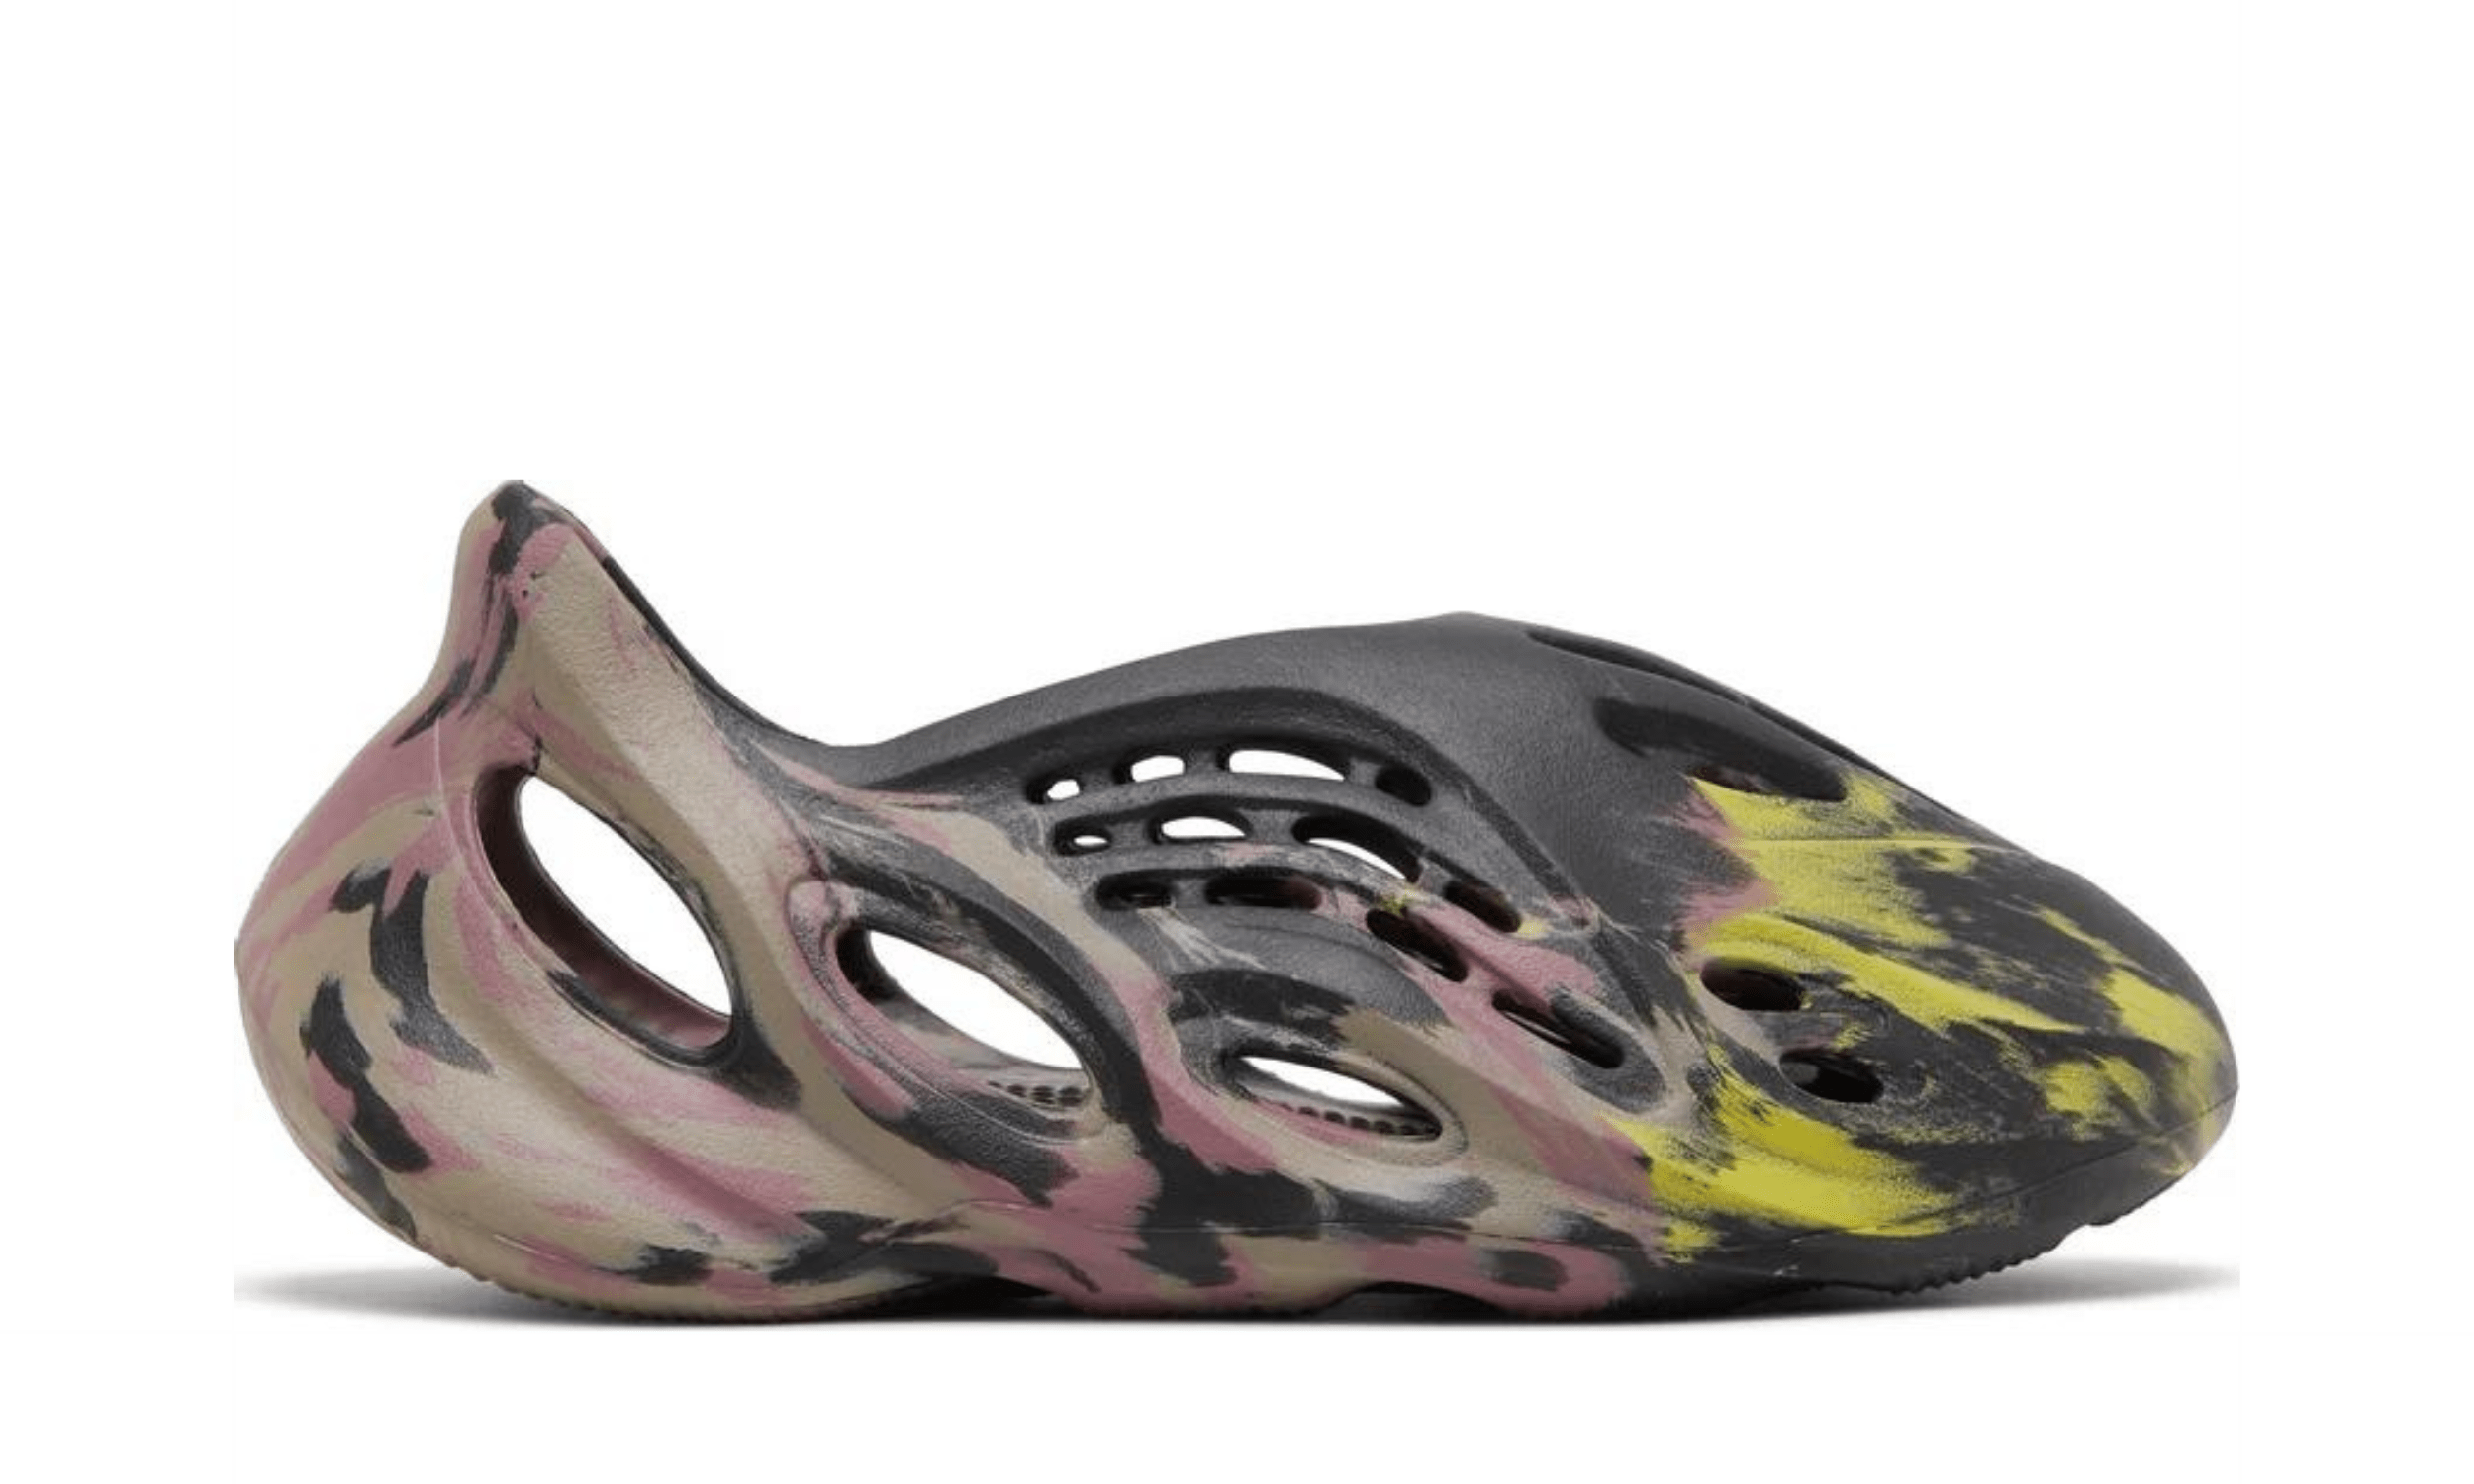 Yeezy Foam Runner MX Carbon - Kicksite - IG9562